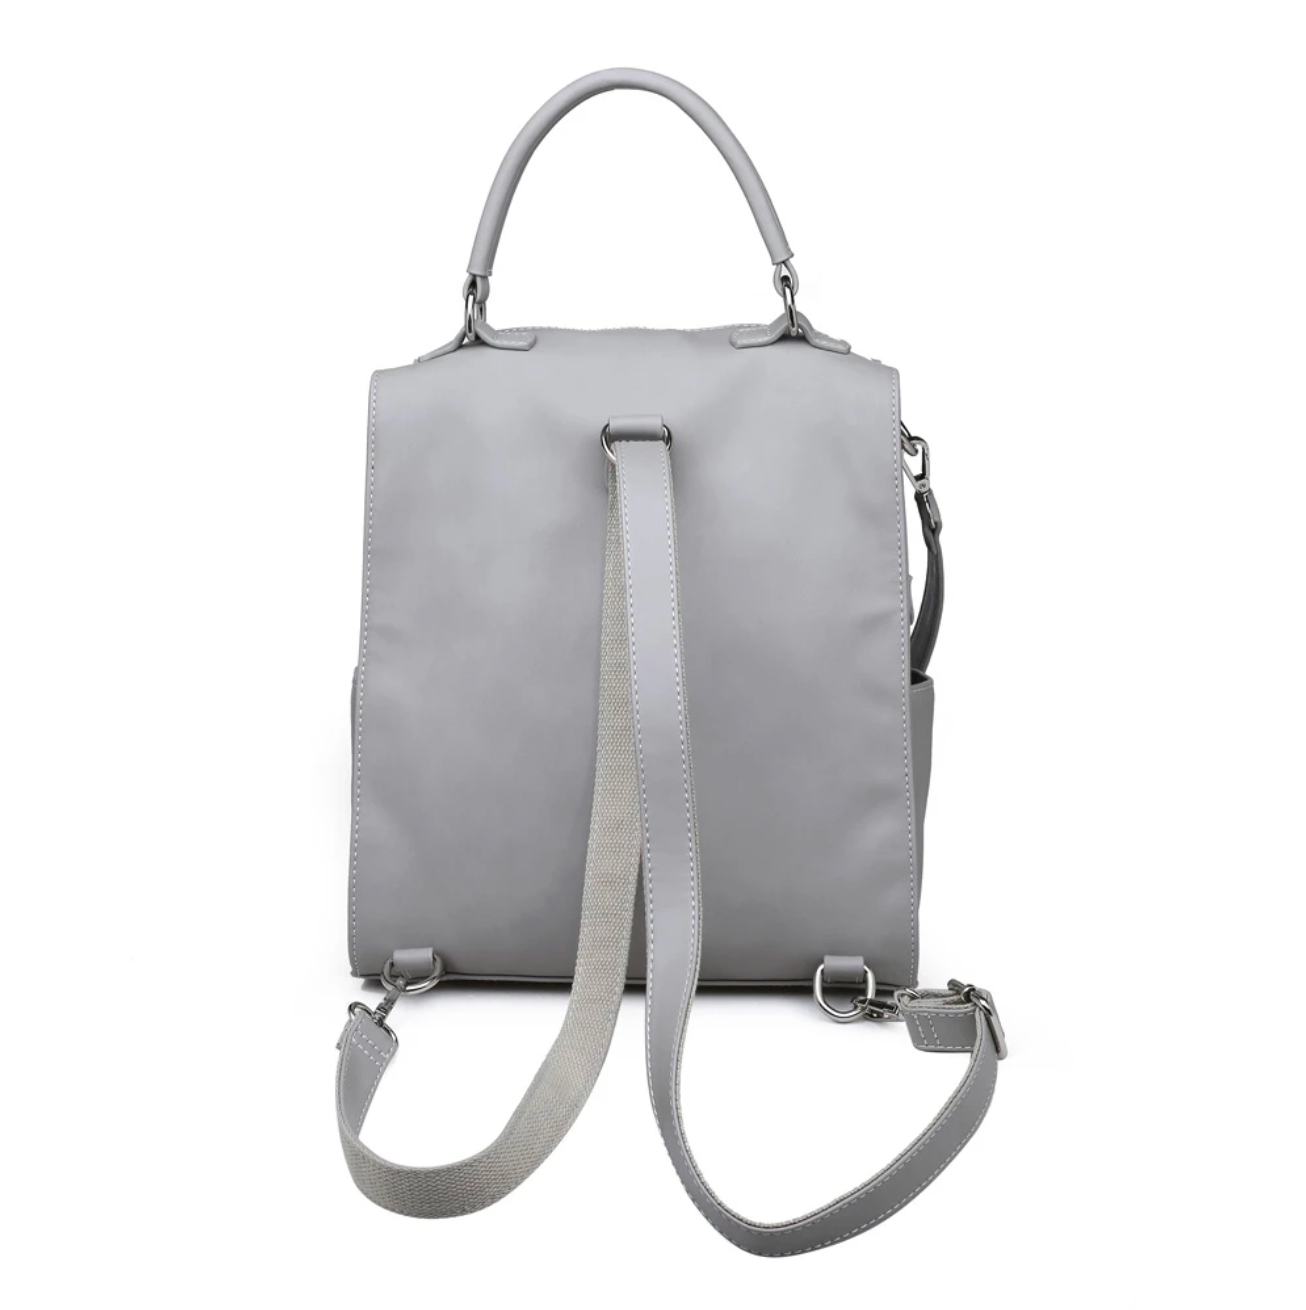 Panama Backpack - Moda Luxe